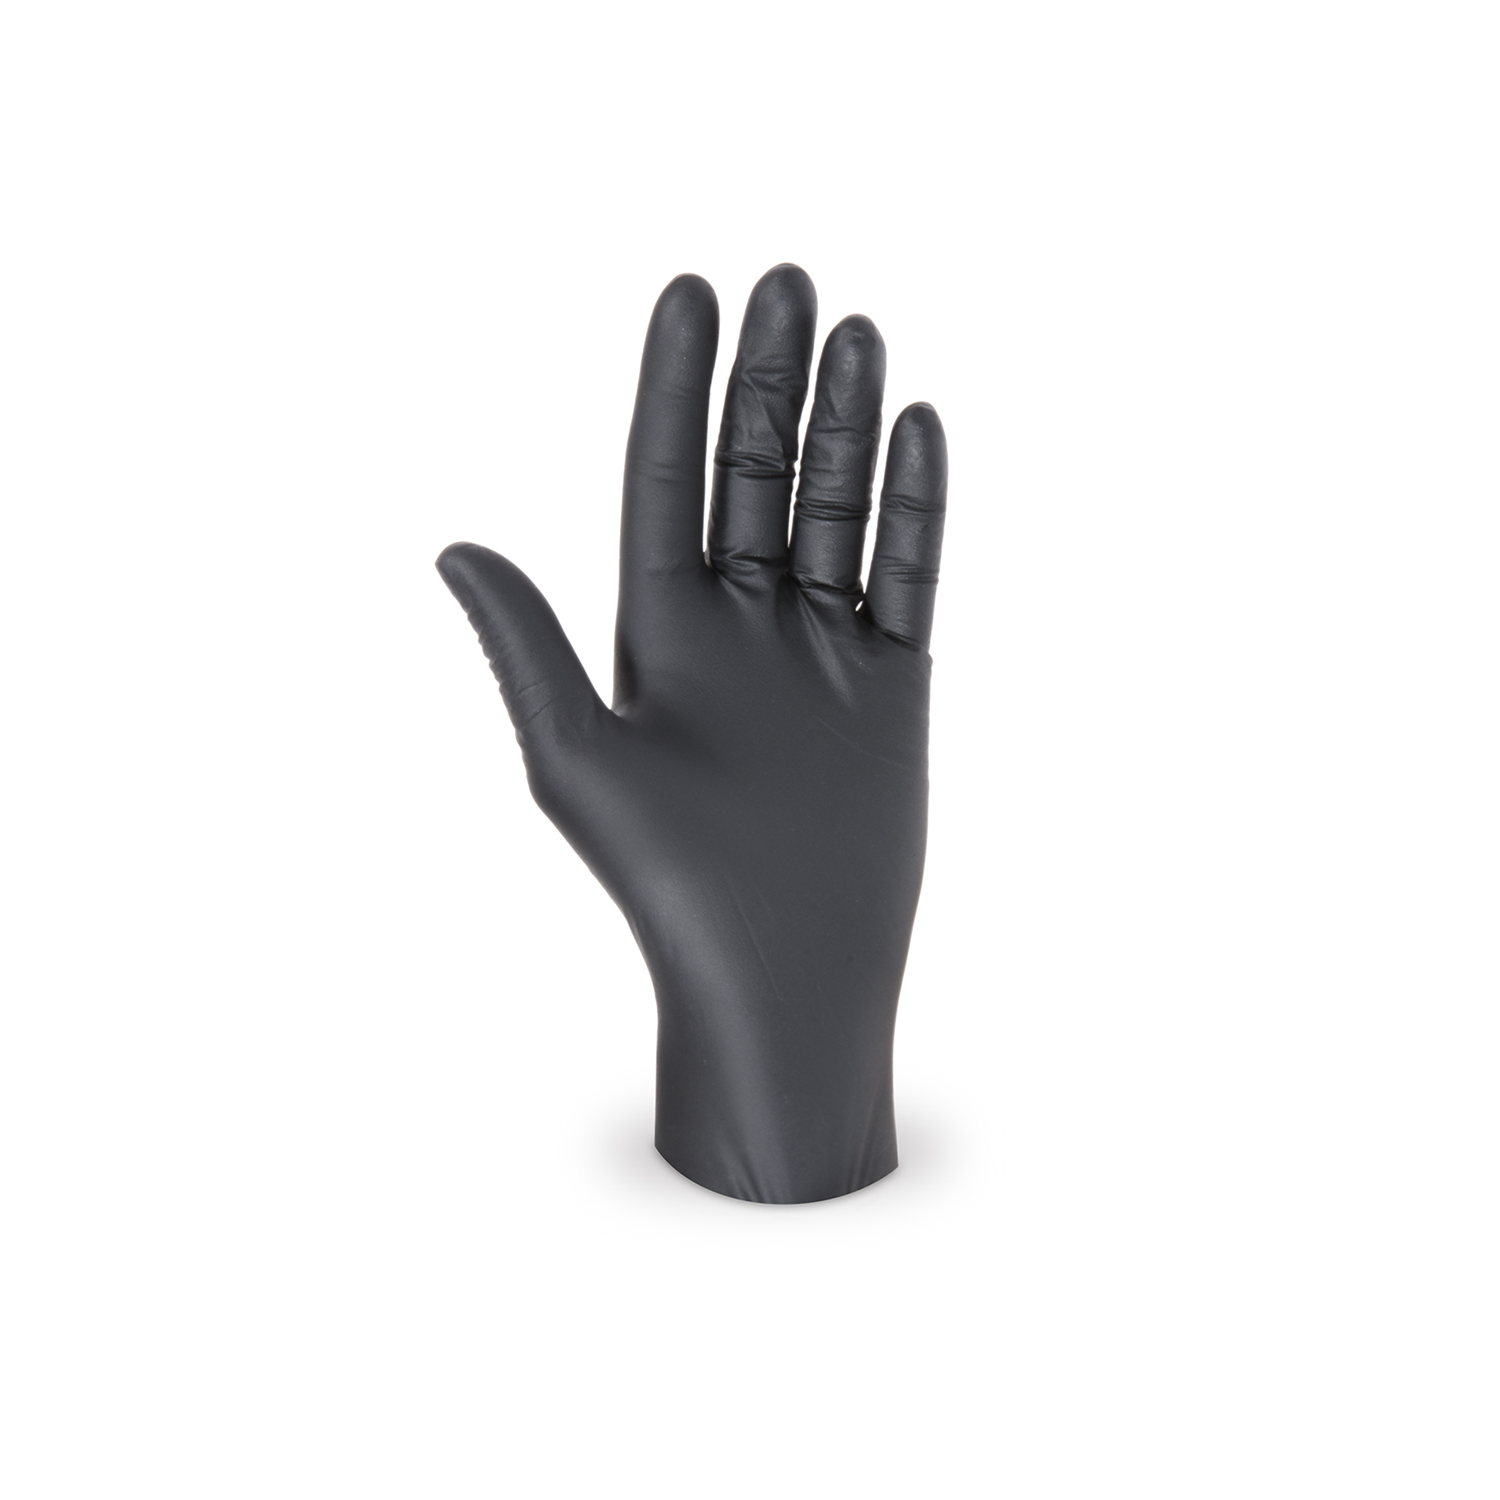 Handschuh (Nitril) ungepudert schwarz S - 100 Stück